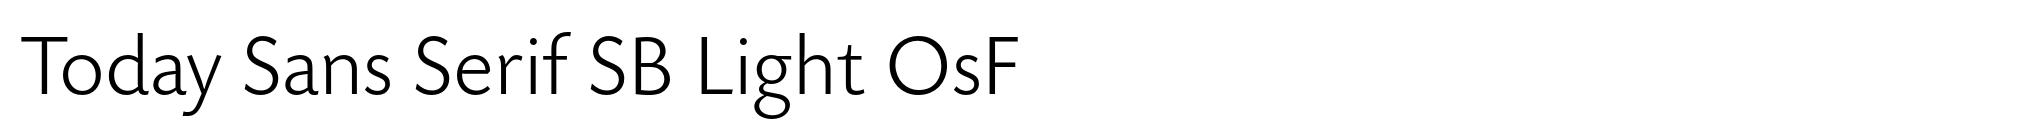 Today Sans Serif SB Light OsF image